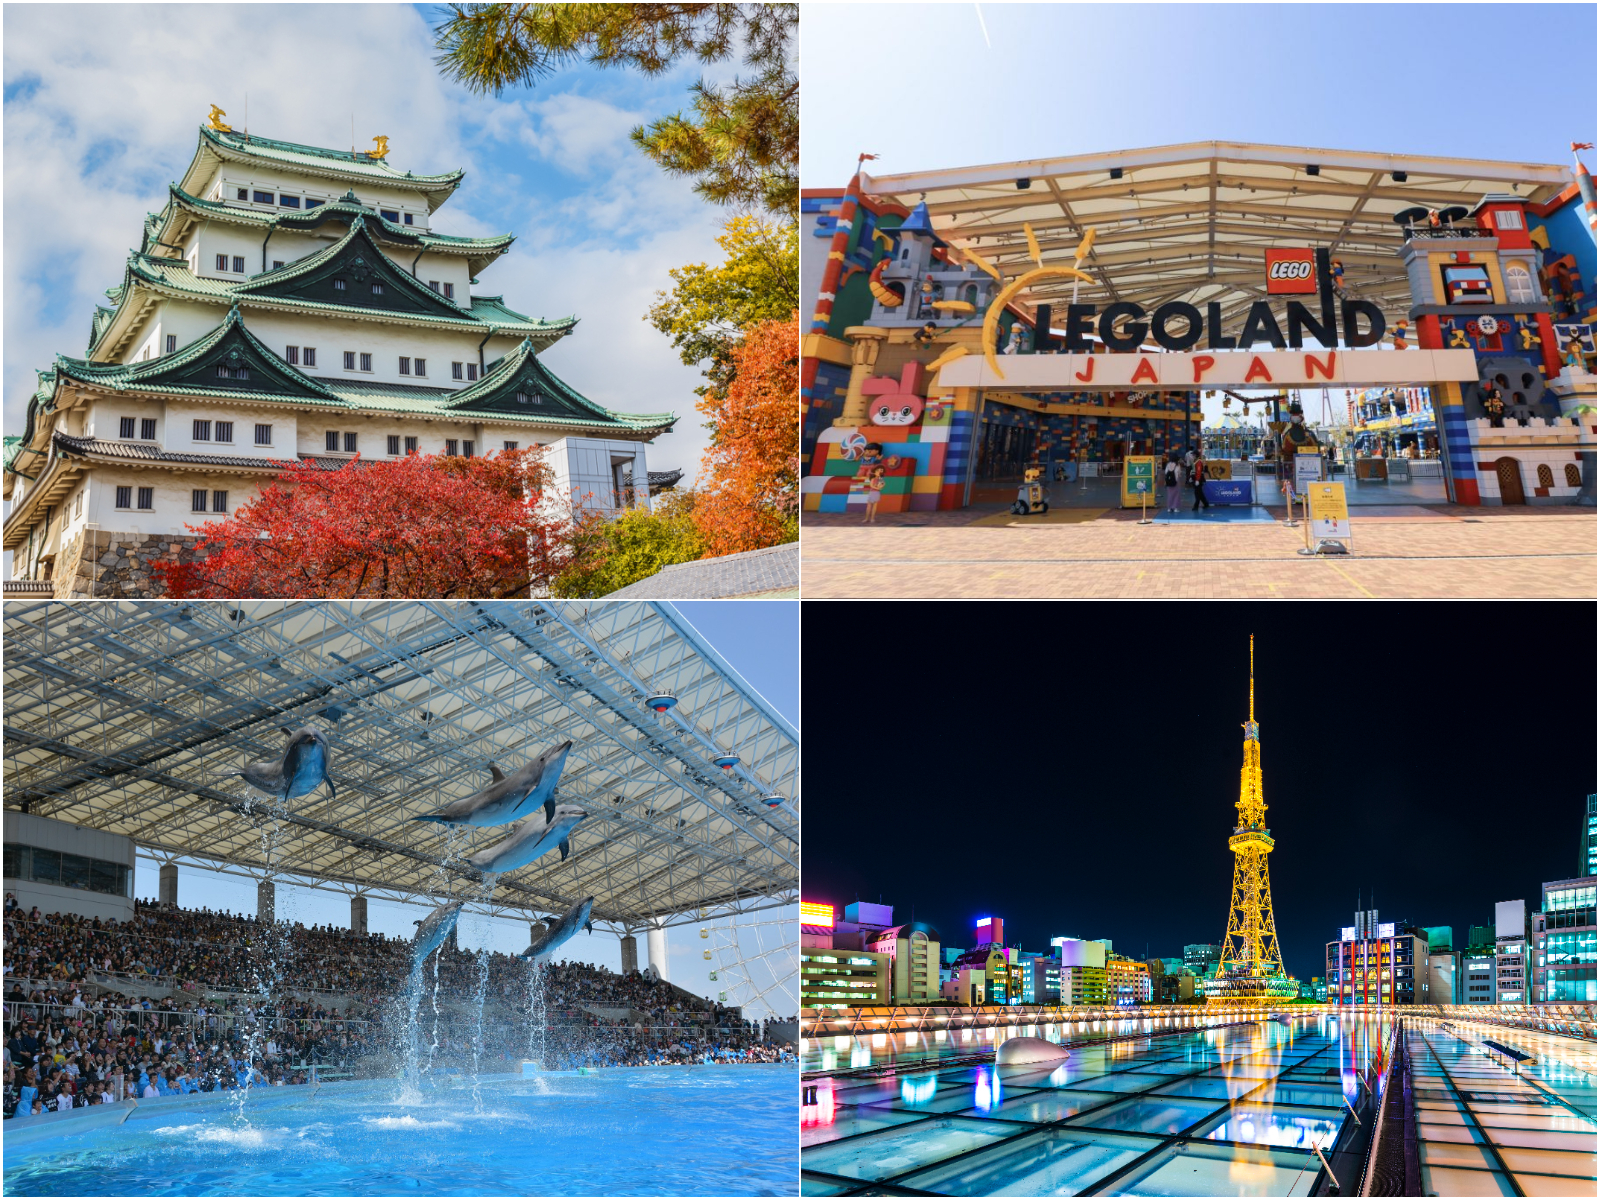 Tổng hợp các địa điểm du lịch nổi tiếng ở Aichi Nagoya